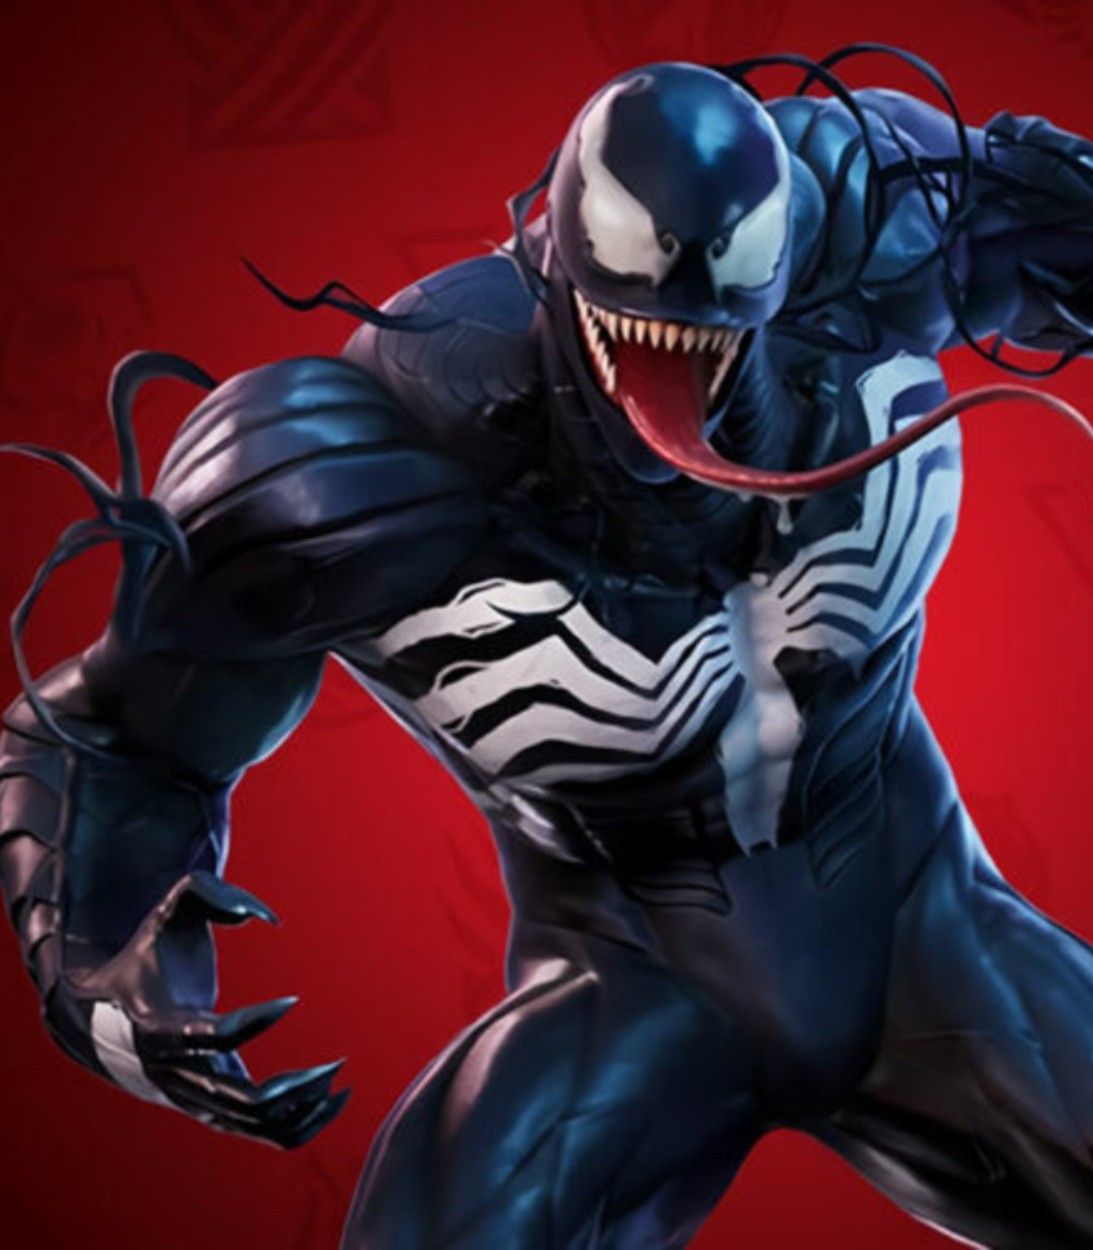 Spider-Man villain Venom